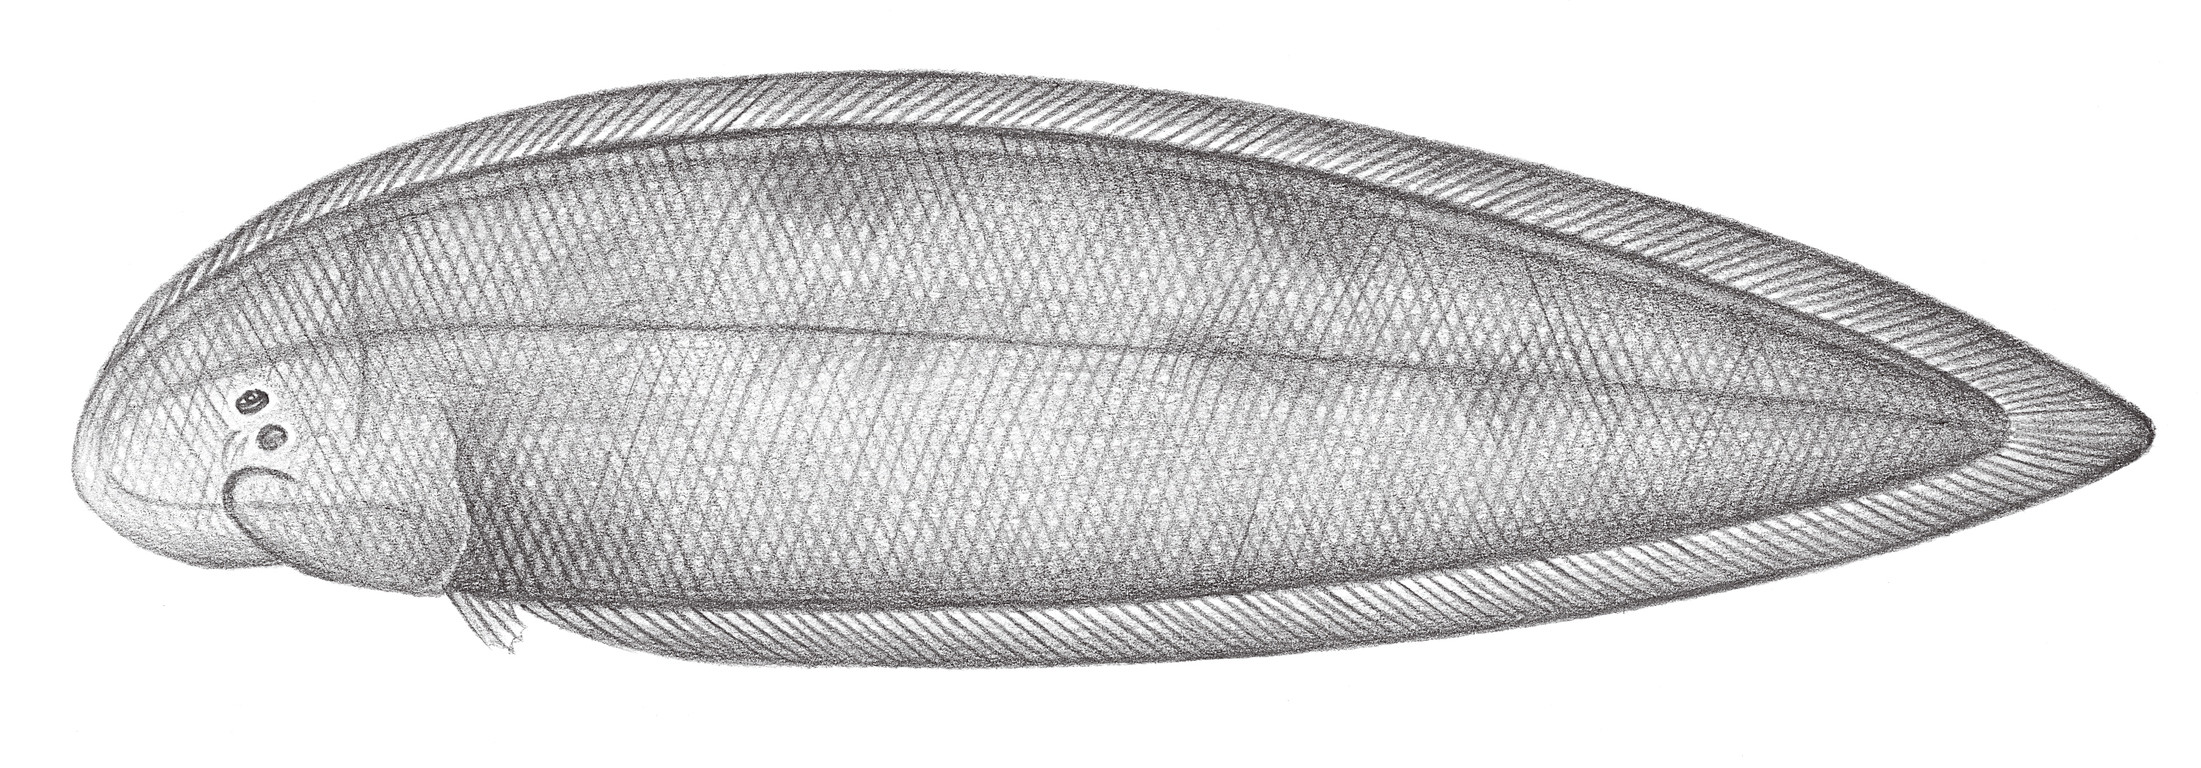 2461.	利達舌鰨 Cynoglossus lida (Bleeker, 1851)